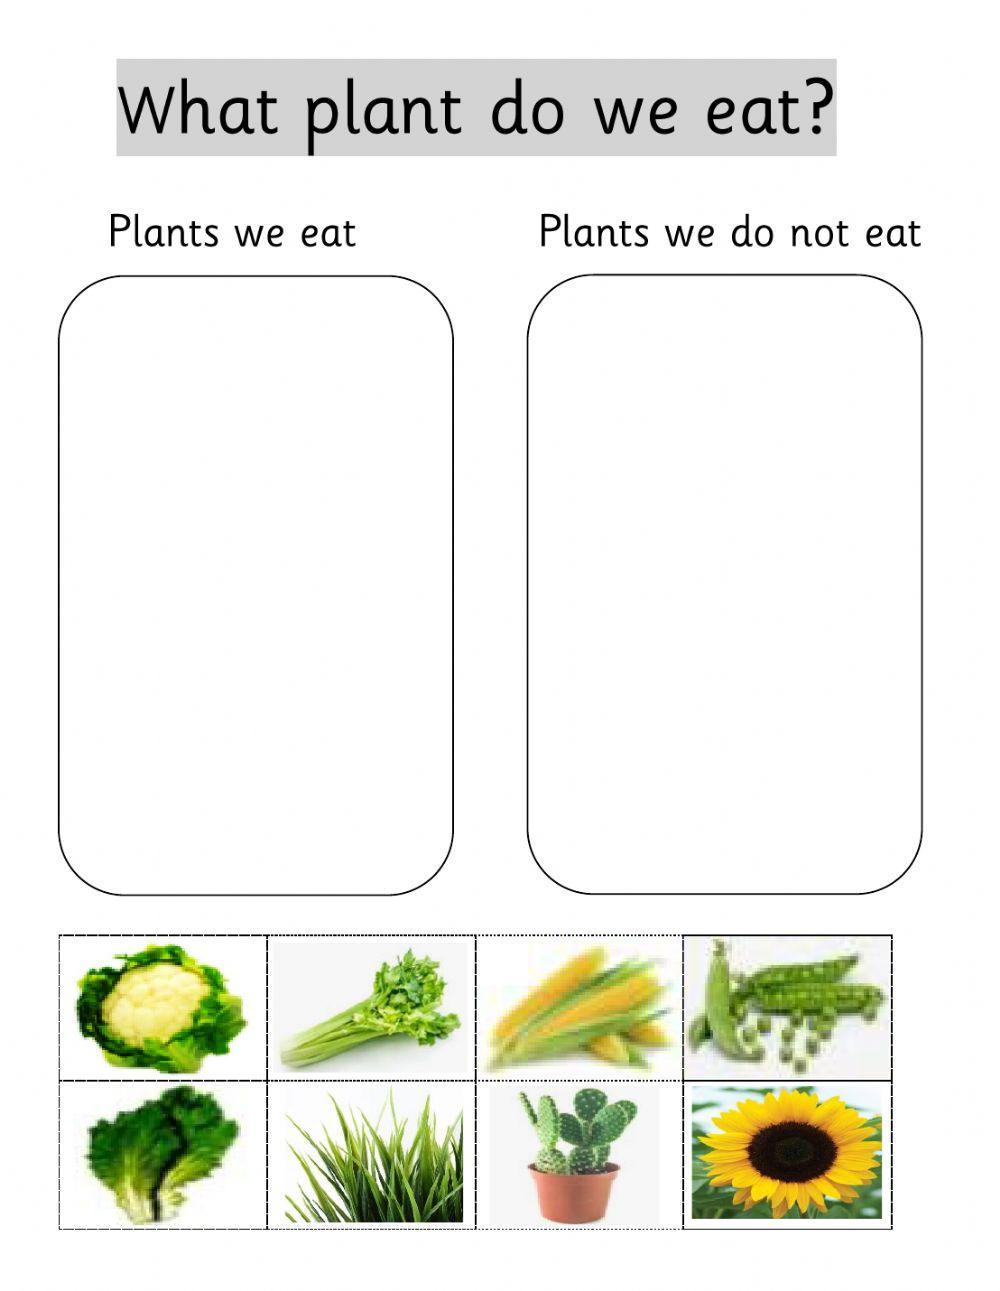 Plants eaten and not eaten sort